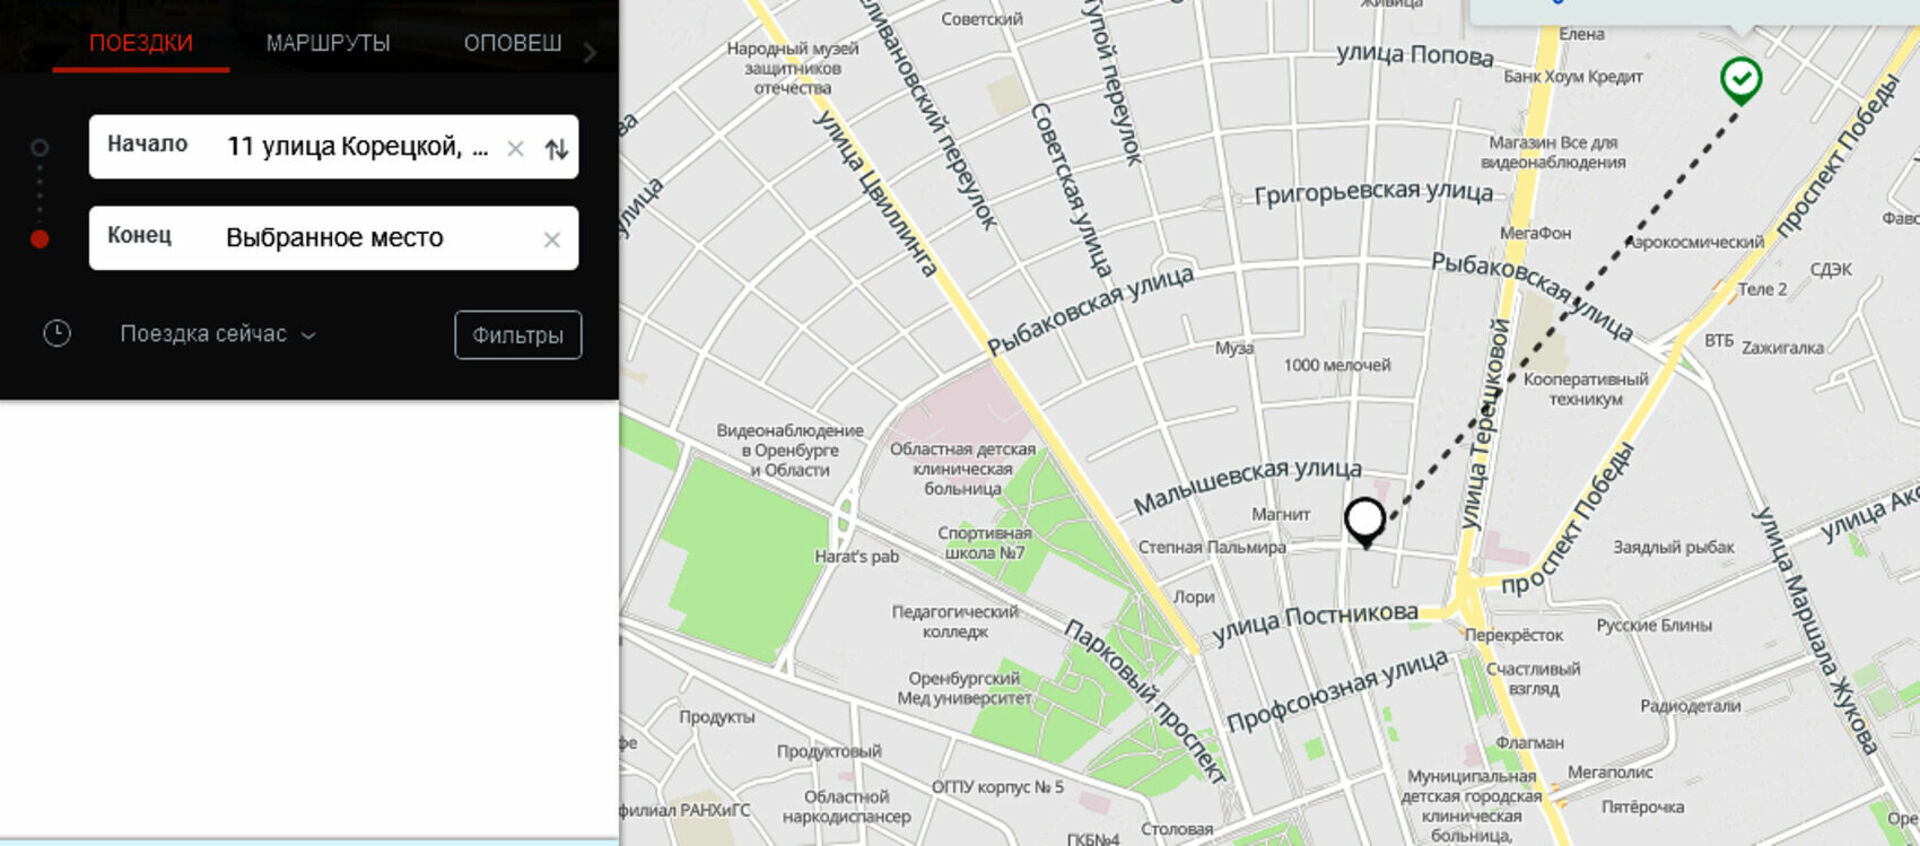 Отследить автобус ярославль. Приложение для отслеживания автобусов. Карта отслеживания автобусов. Мониторинг общественного транспорта в Москве. Moovit транспортное приложение.